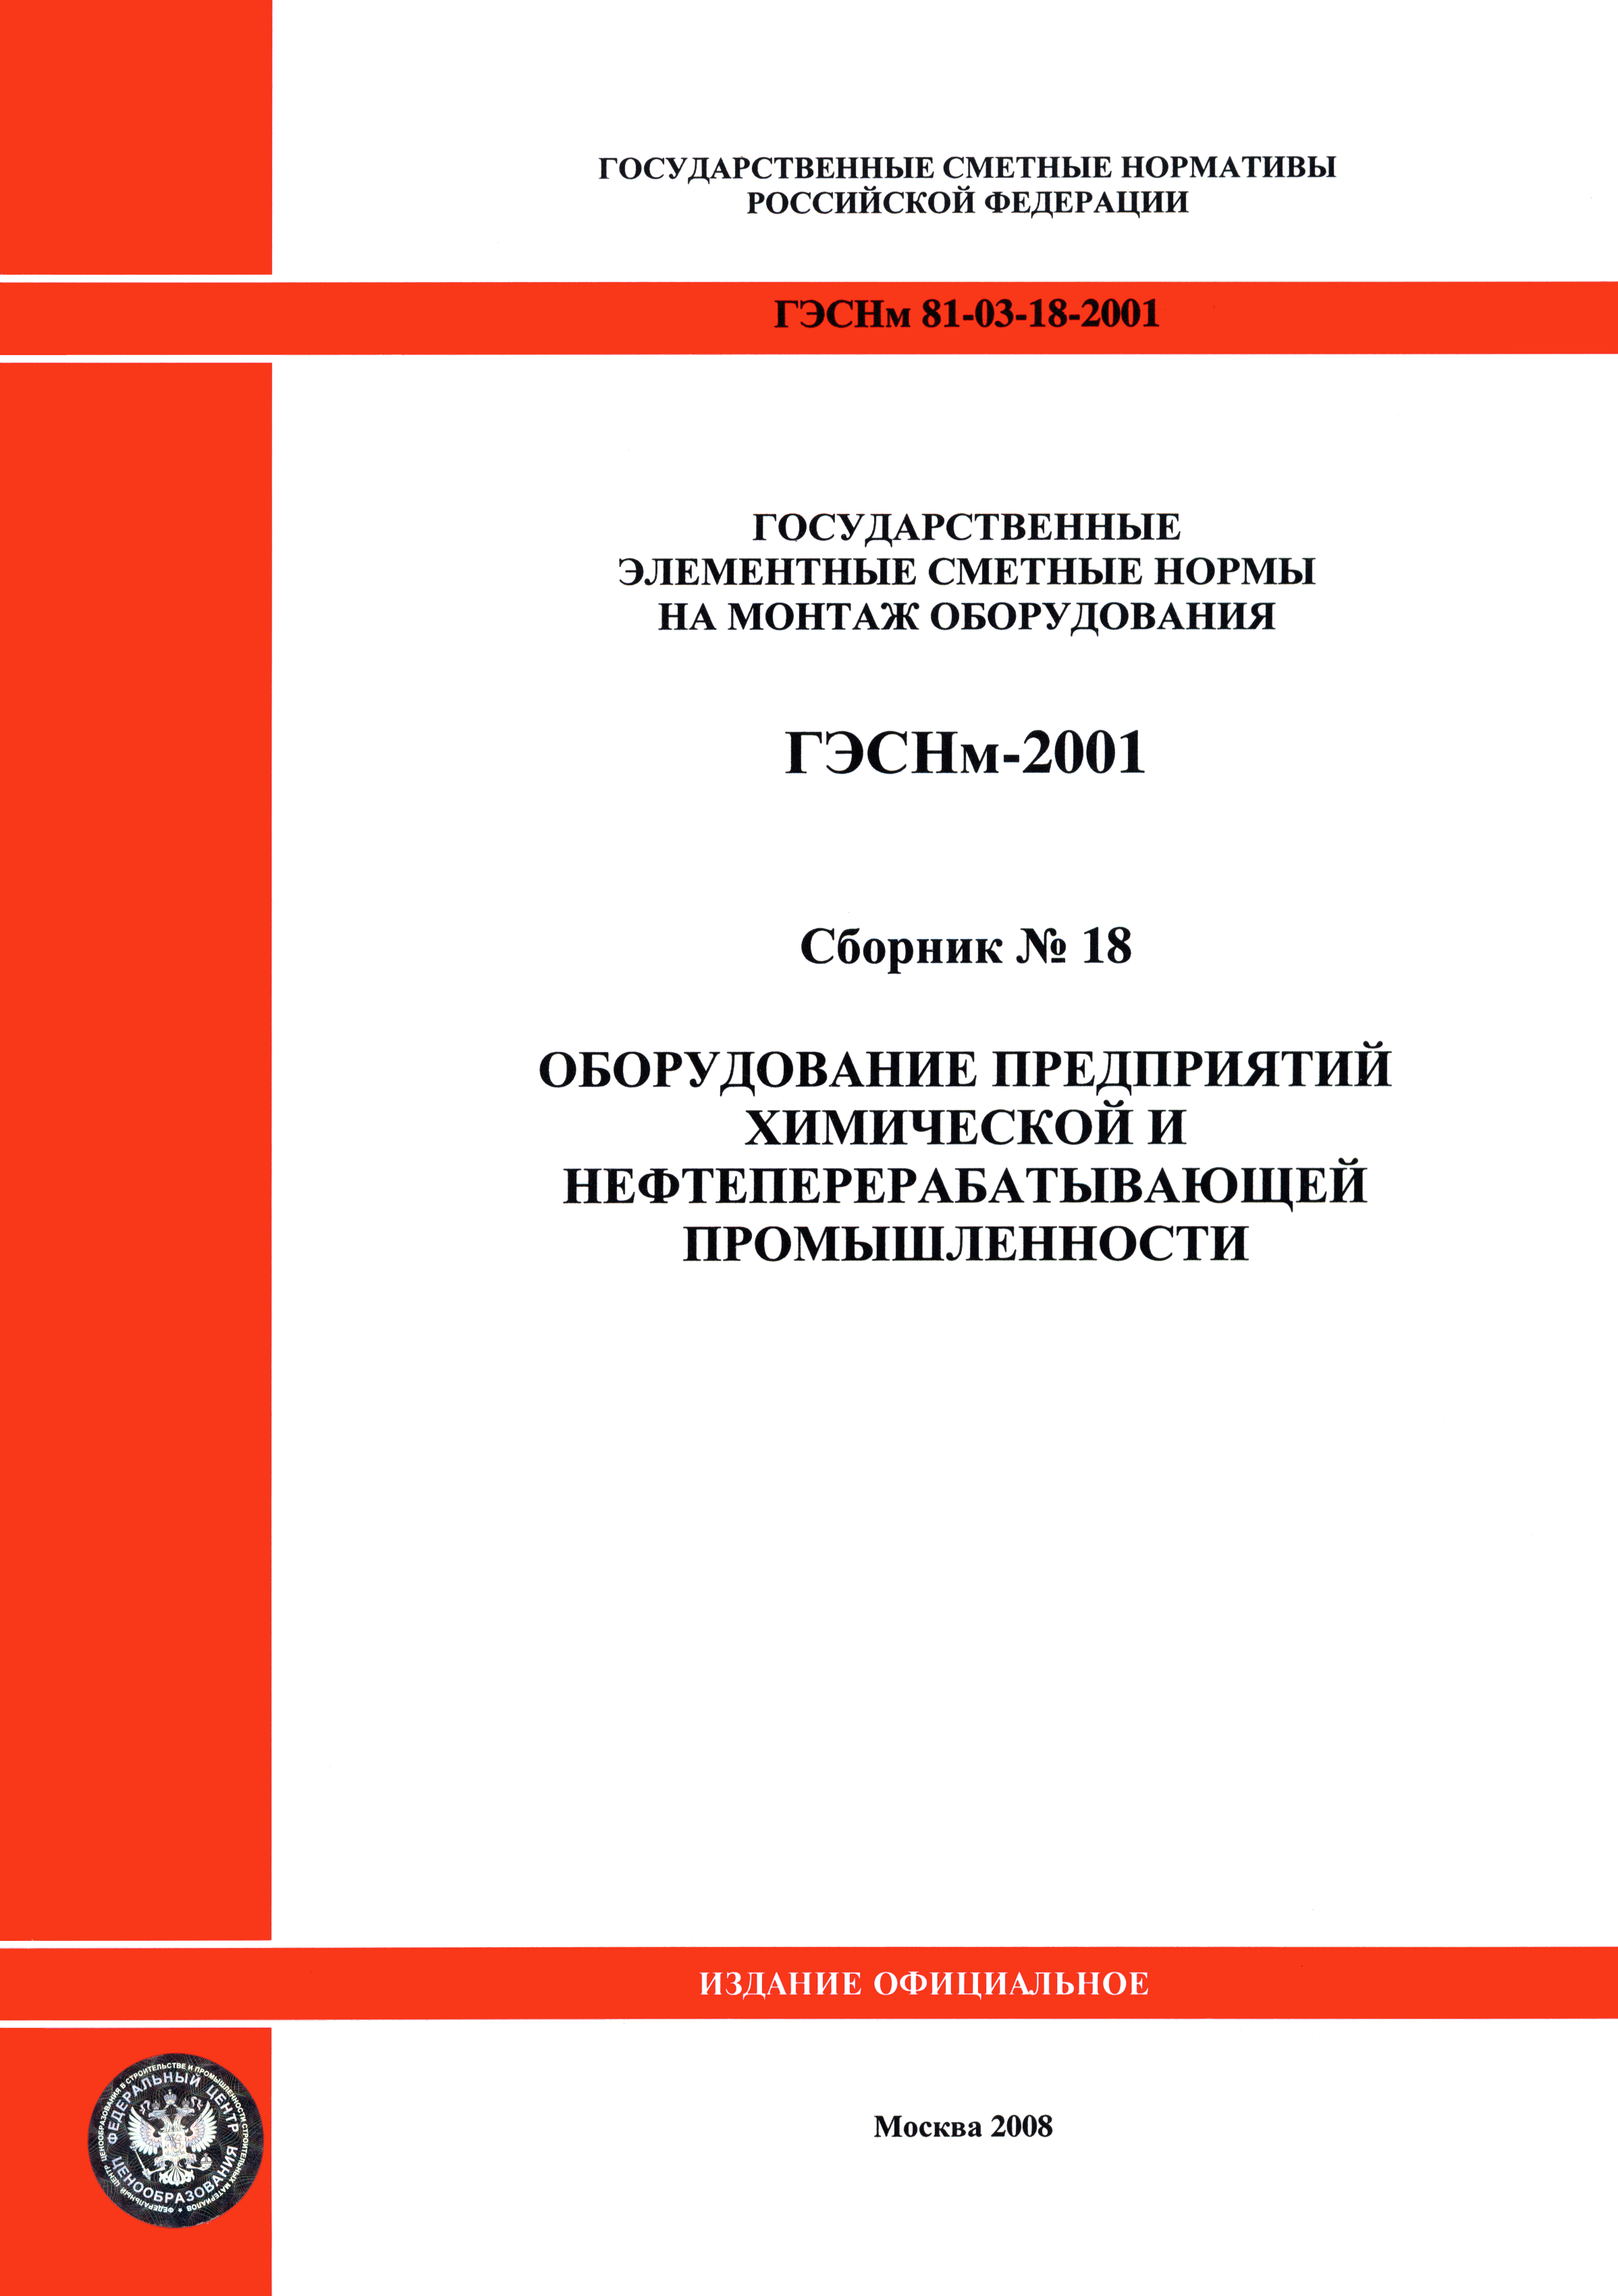 ГЭСНм 2001-18